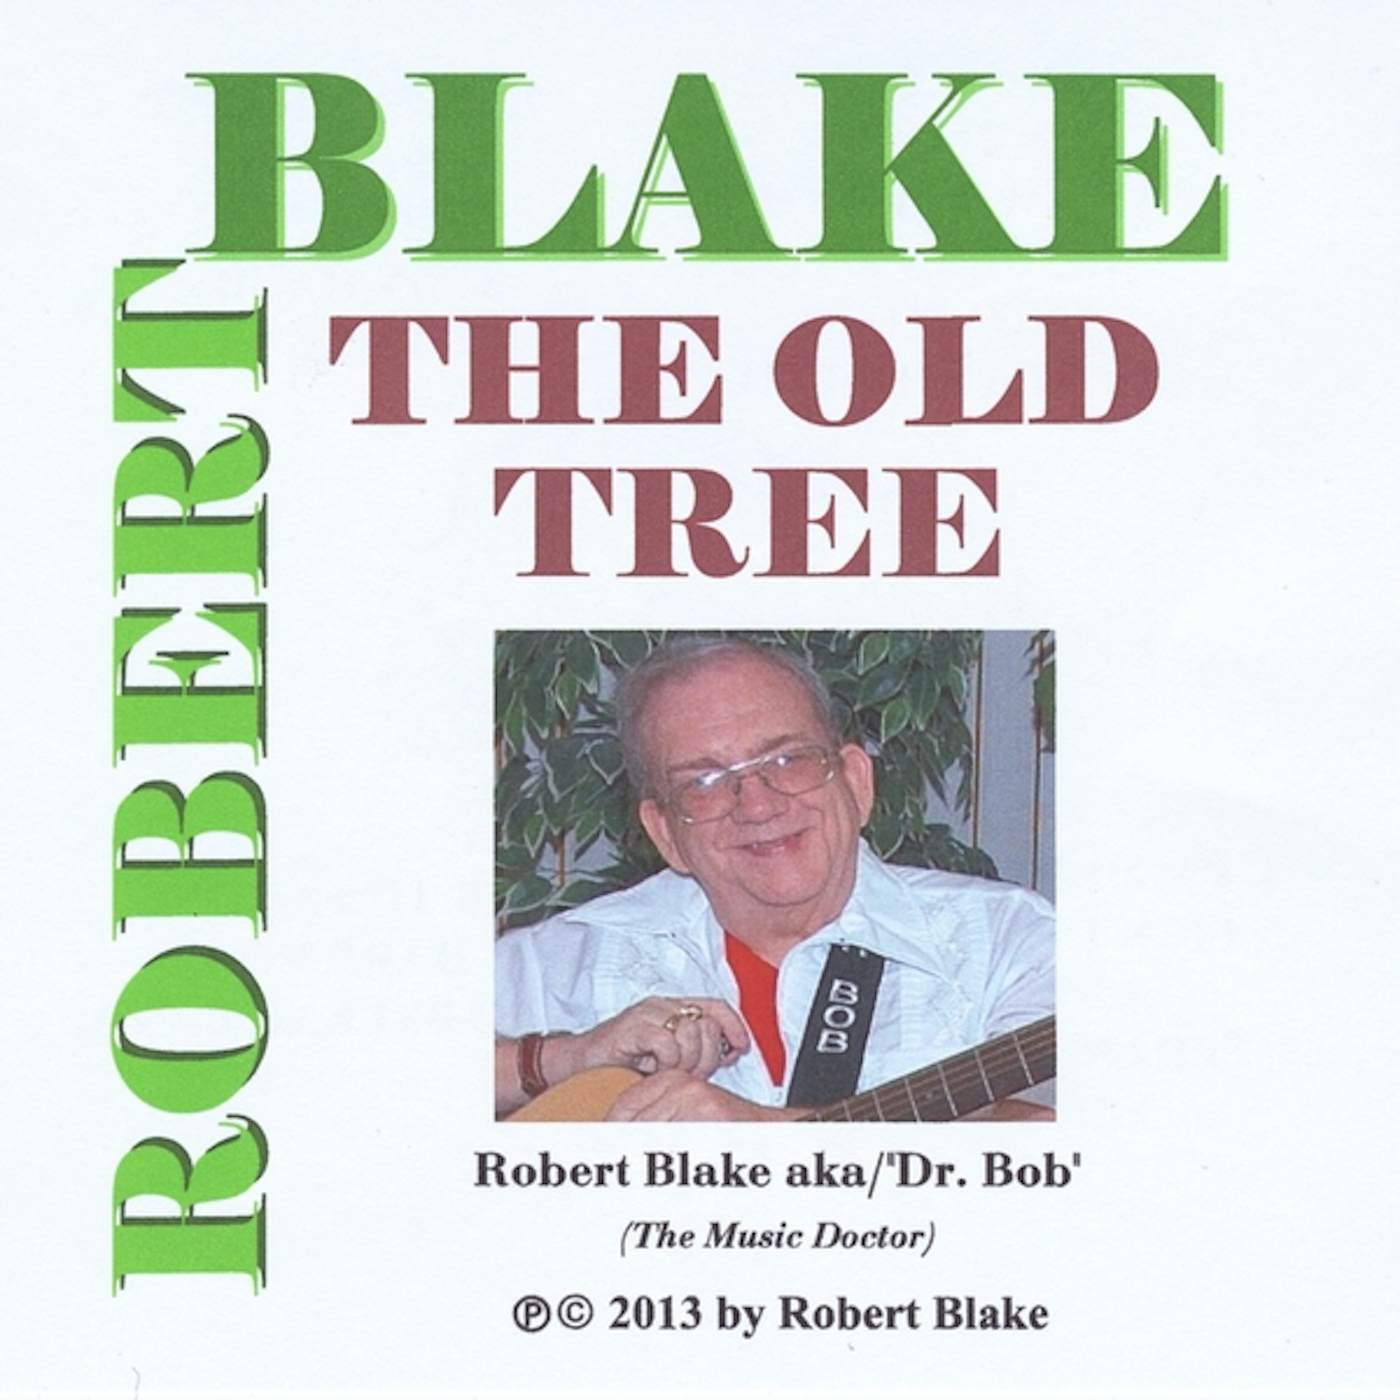 Robert Blake OLD TREE CD